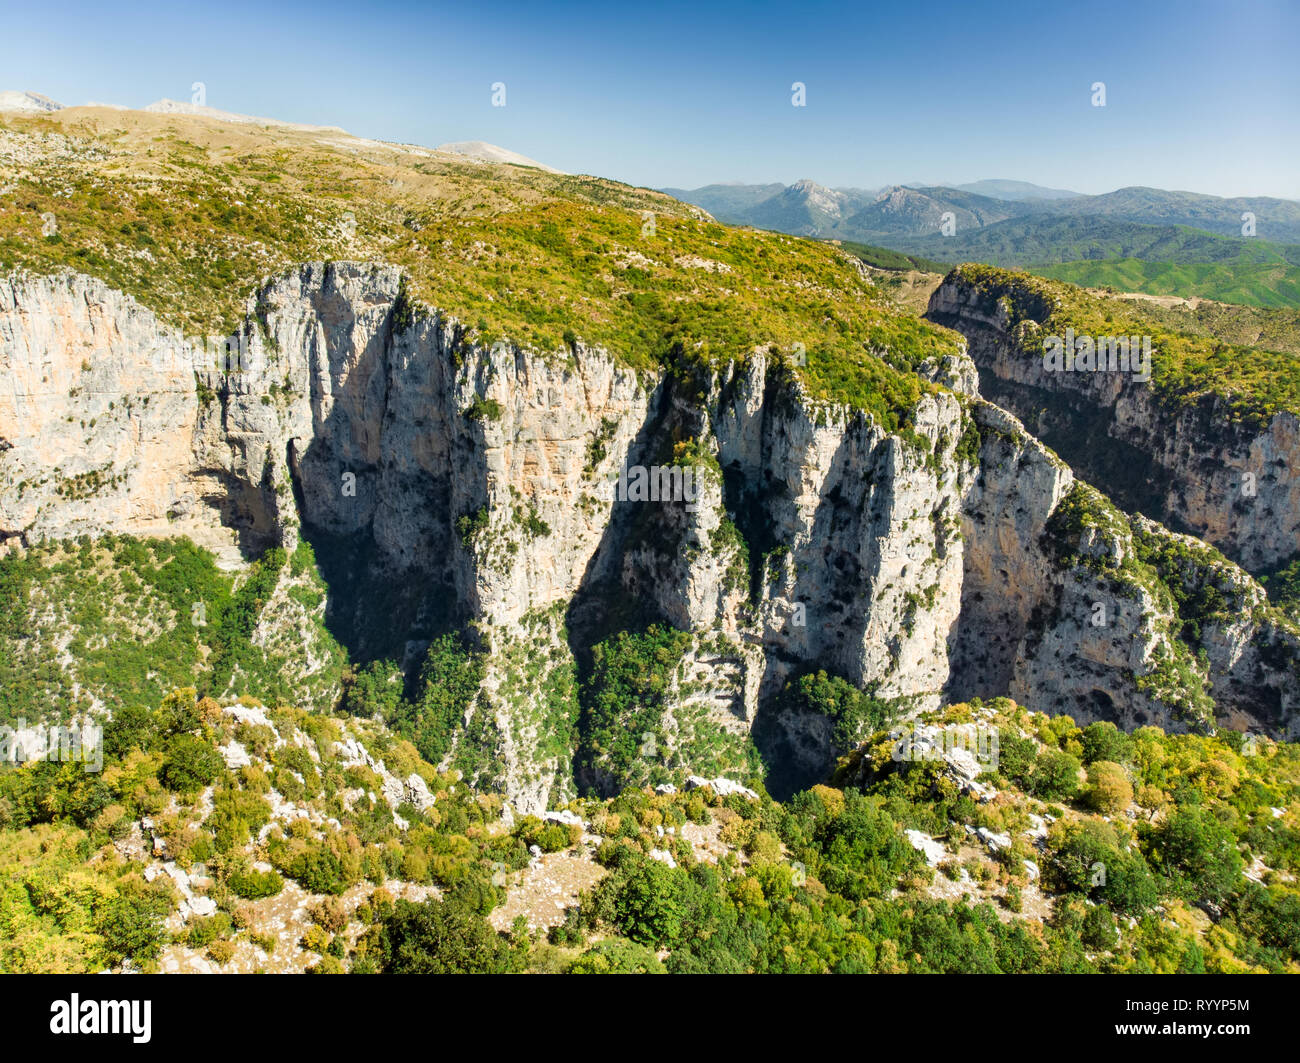 La foresta di pietra, formazione rocciosa naturale, creato da più strati di pietra, situato vicino al villaggio di Monodendri Zagori nella regione, Epiro, nel nord della Grecia. Foto Stock